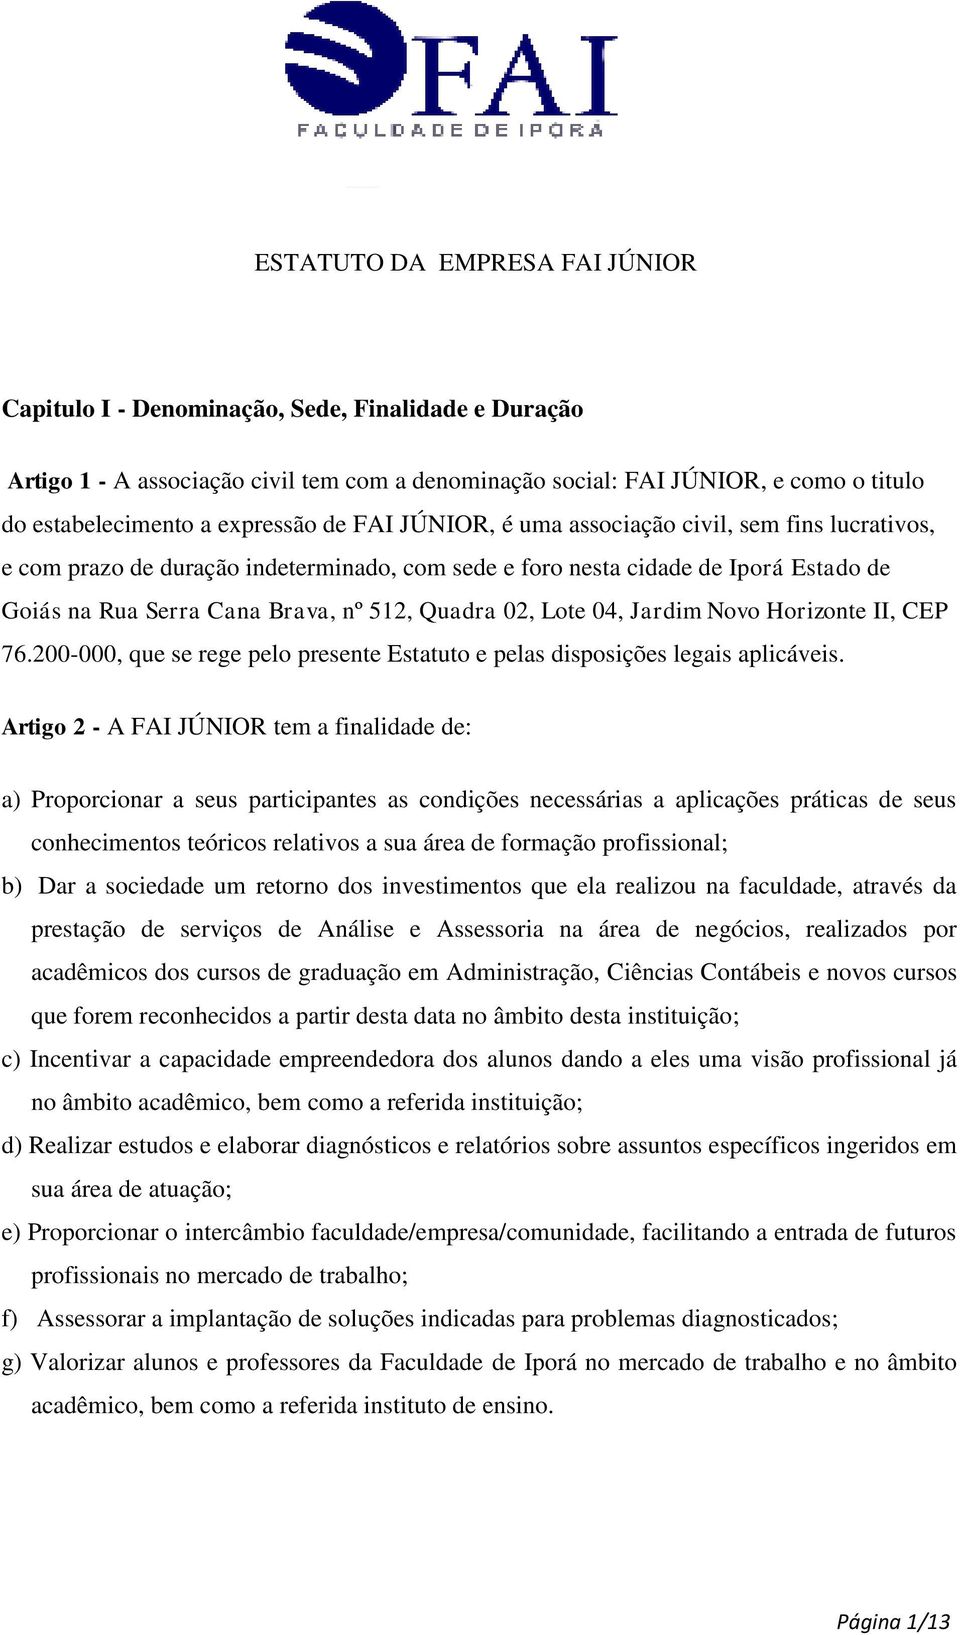 Quadra 02, Lote 04, Jardim Novo Horizonte II, CEP 76.200-000, que se rege pelo presente Estatuto e pelas disposições legais aplicáveis.